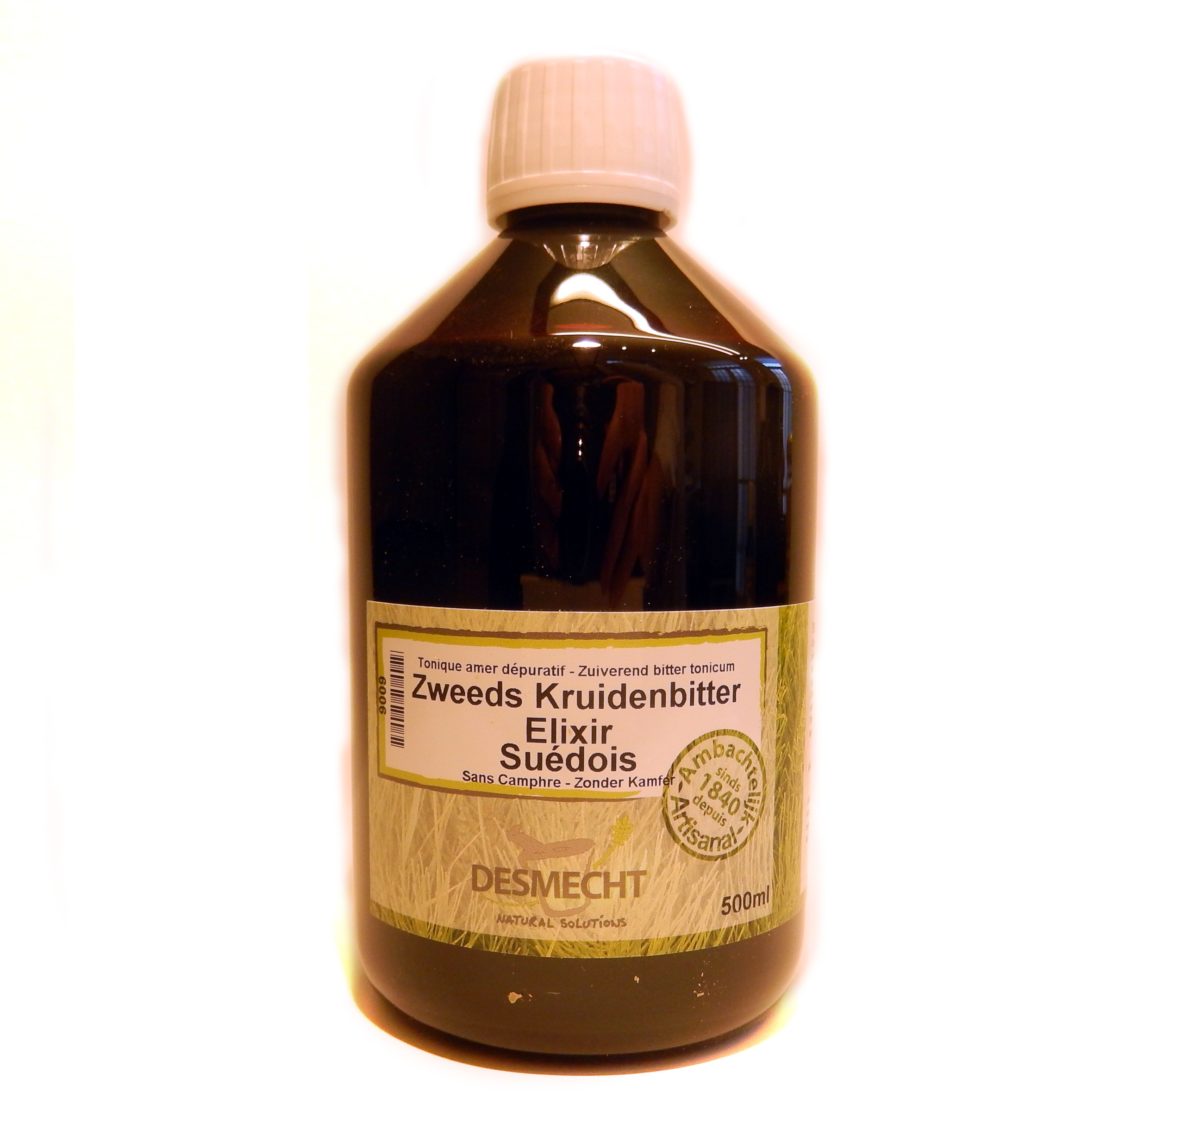 Online kopen: Zweeds kruidenbitter 500ml (recept ZONDER kamfer) - Het traditioneel recept MET kamfer is eveneens beschikbaar gebruik van kamfer wordt afgeraden een simultaan gebruik van homeopathische producten)Ook beschikbaar in